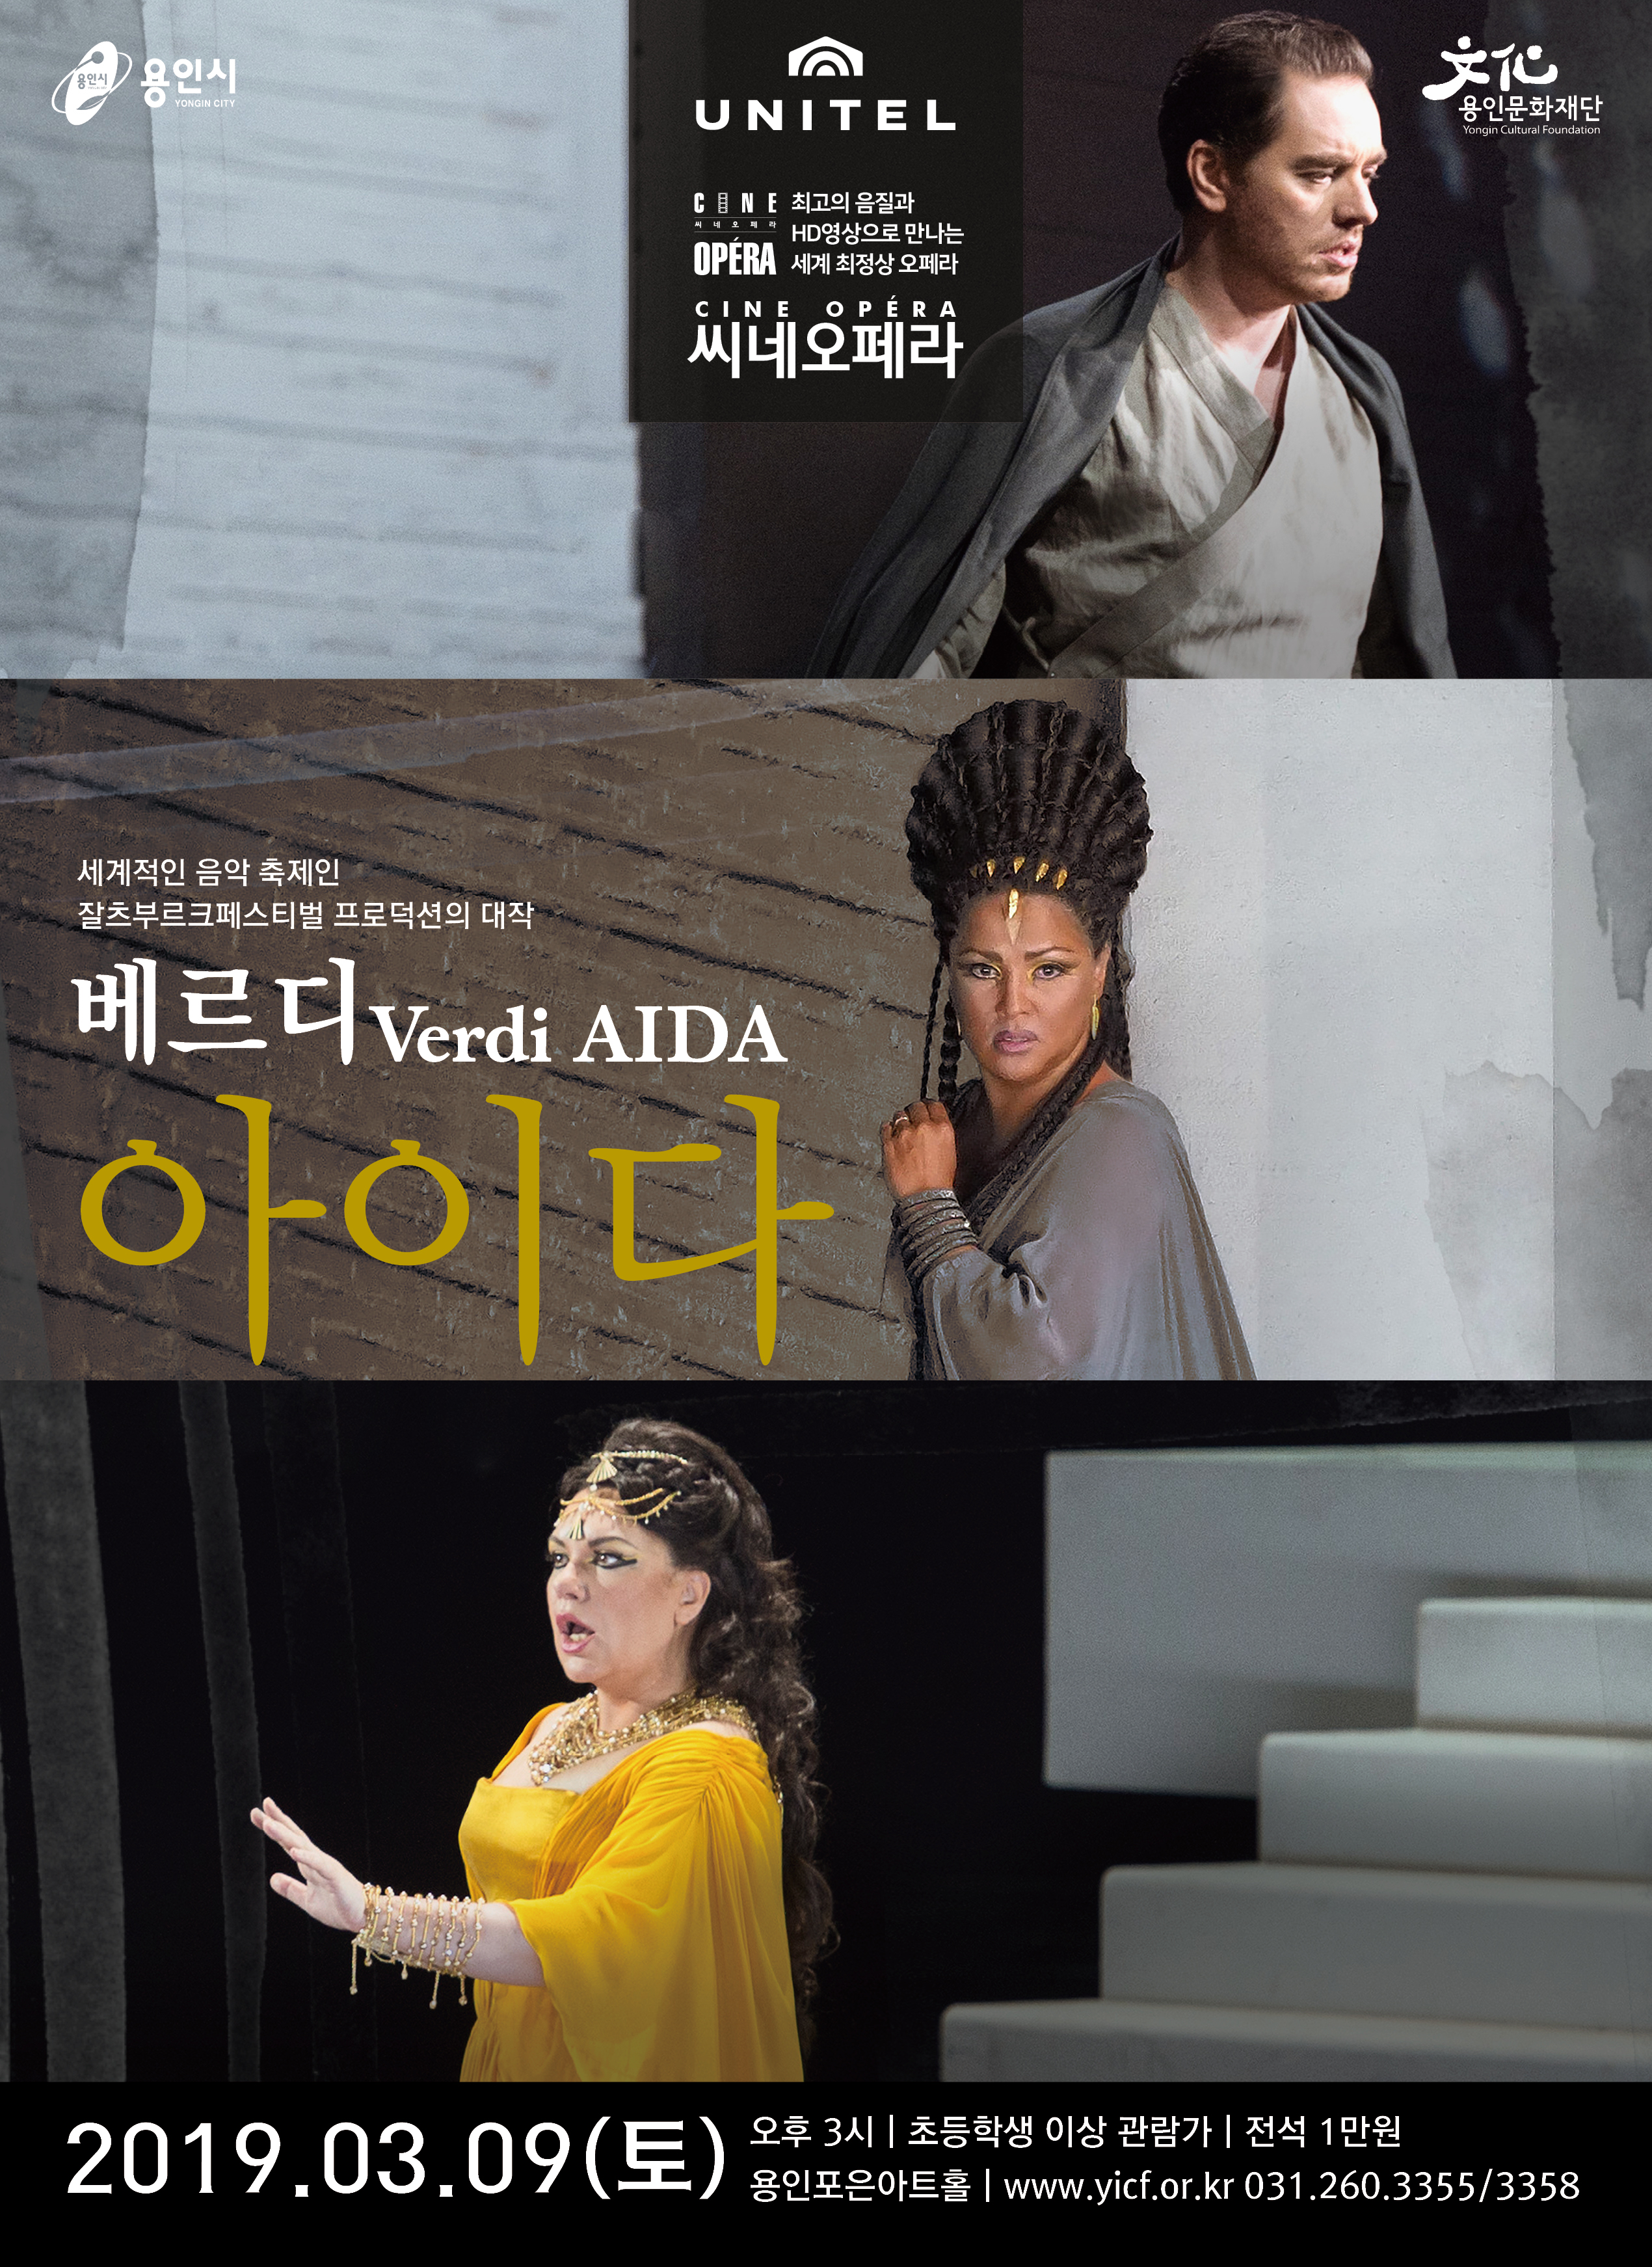 2019 씨네오페라 1 [베르디 <아이다>] - 공연 실황 홍보포스터